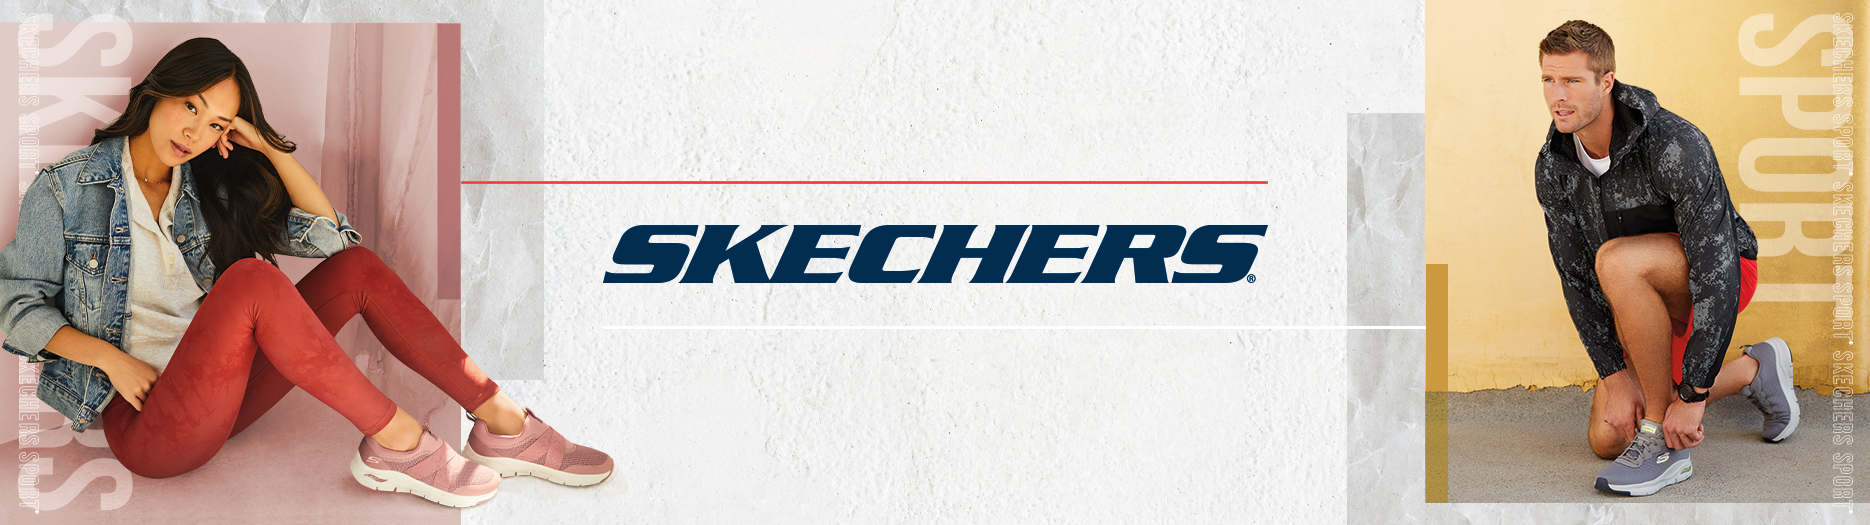 Skechers SAFRA_1870x525